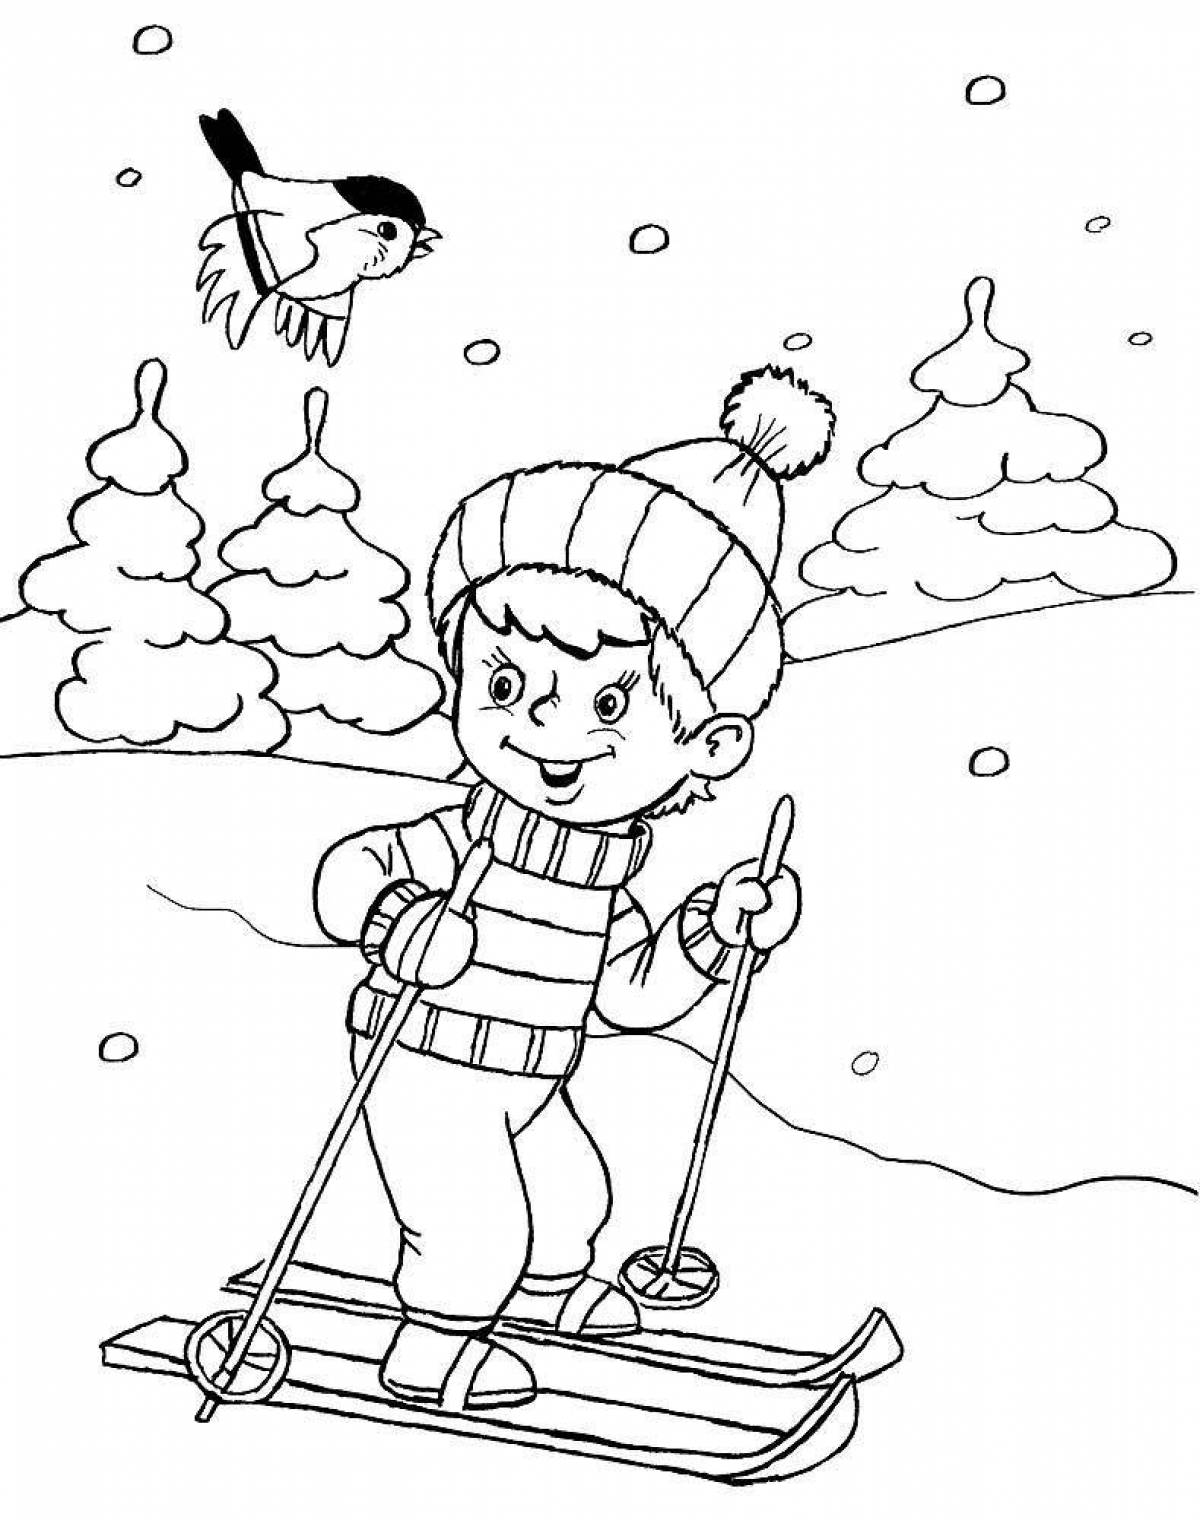 Великолепная зимняя забавная раскраска для детей